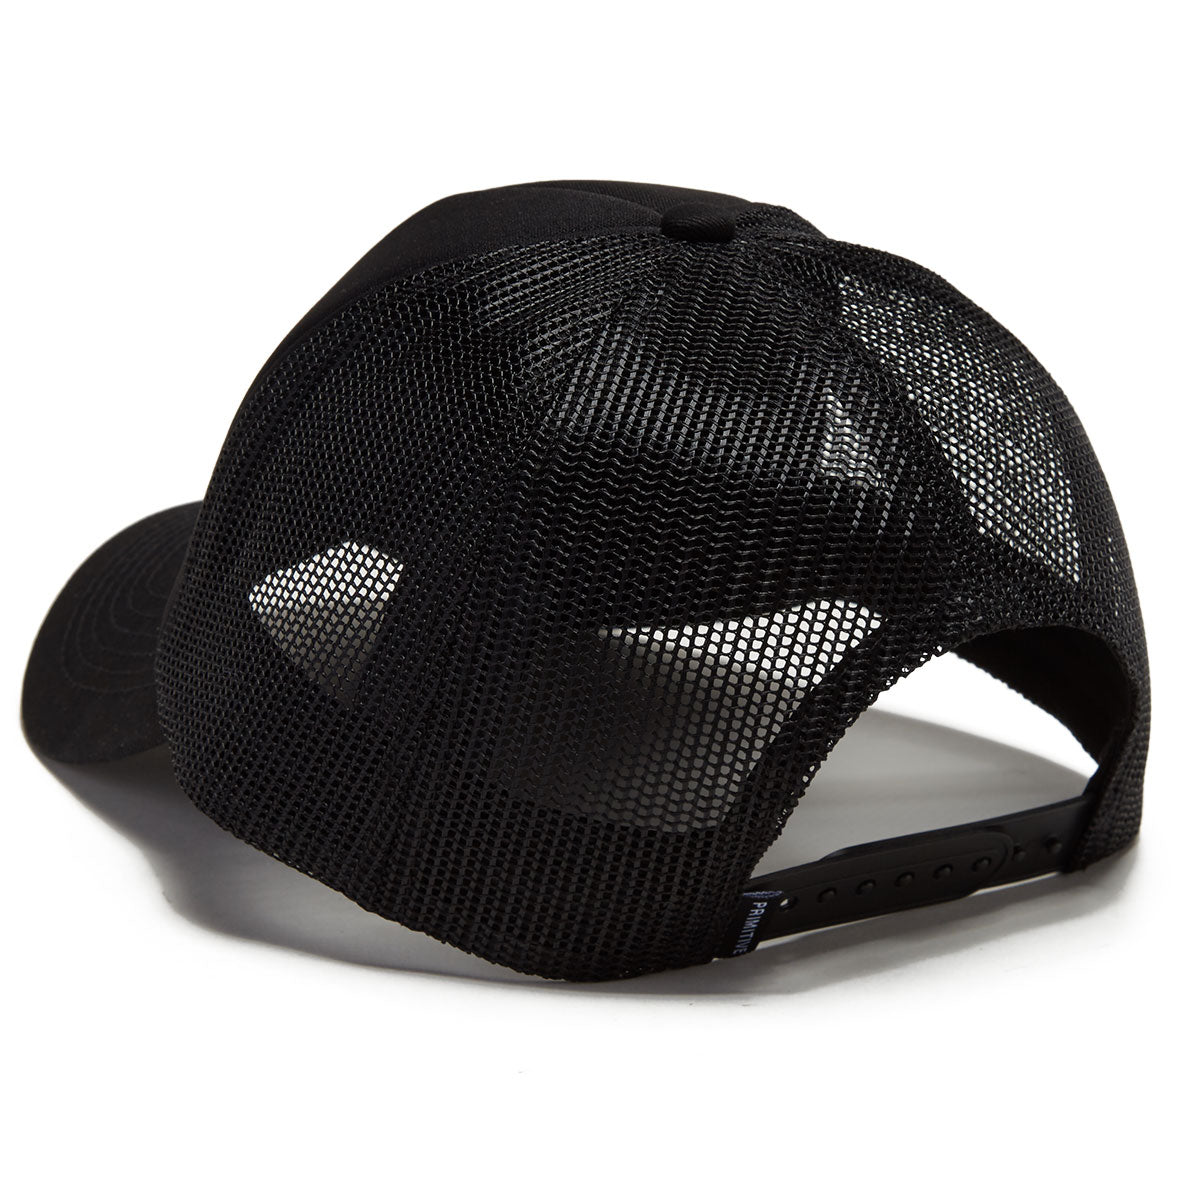 Primitive Luna Strapback Hat - Black image 2